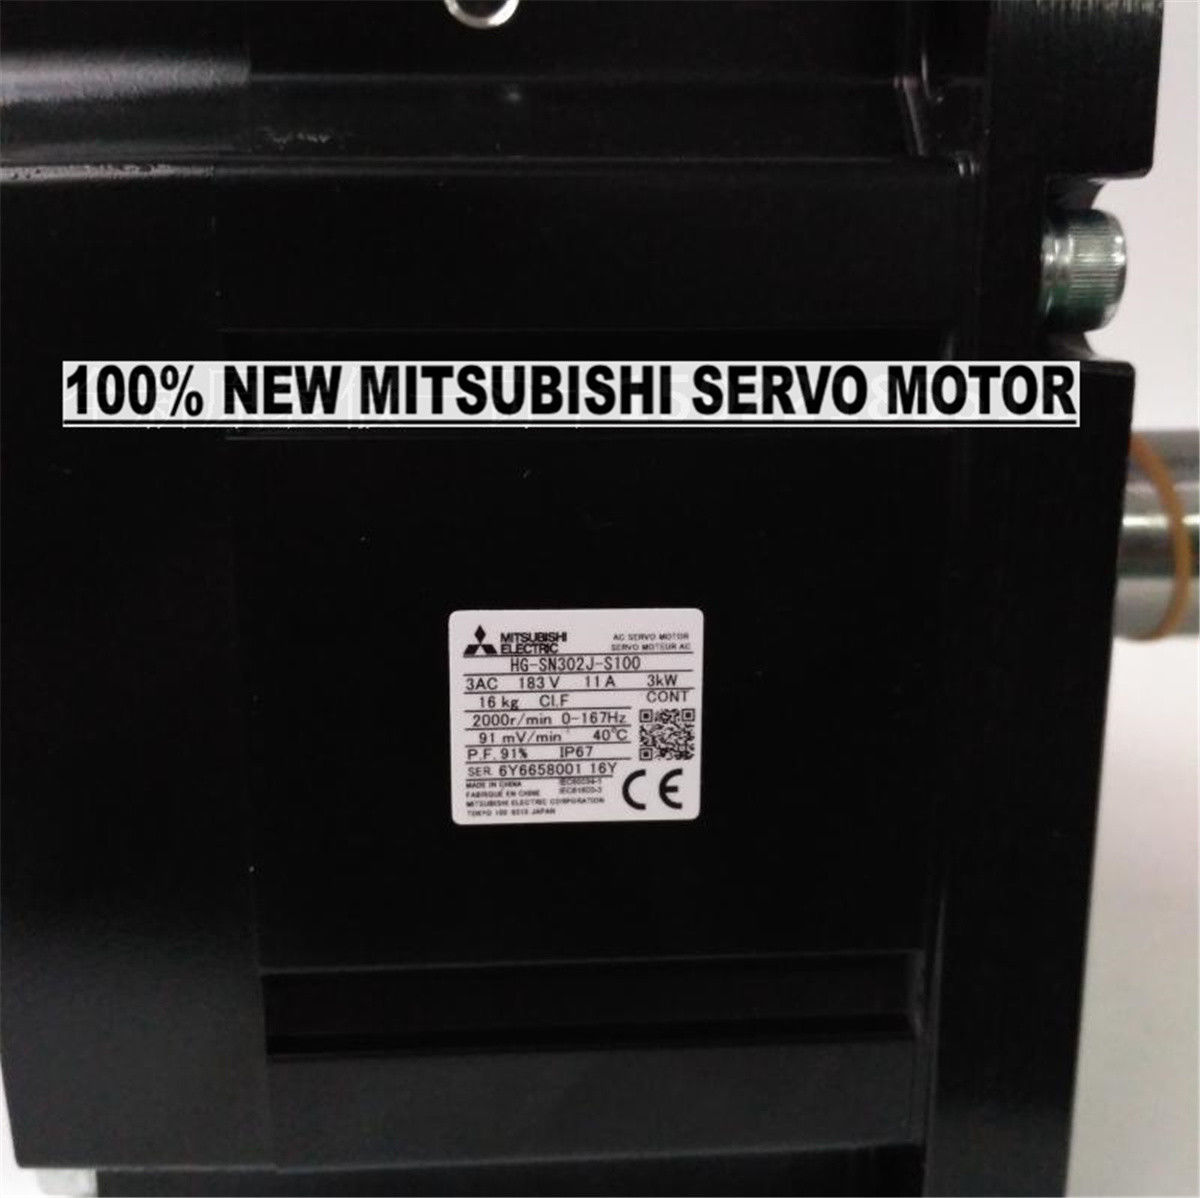 Brand NEW Mitsubishi Servo Motor HG-SN302J-S100 in box HGSN302JS100 - Click Image to Close